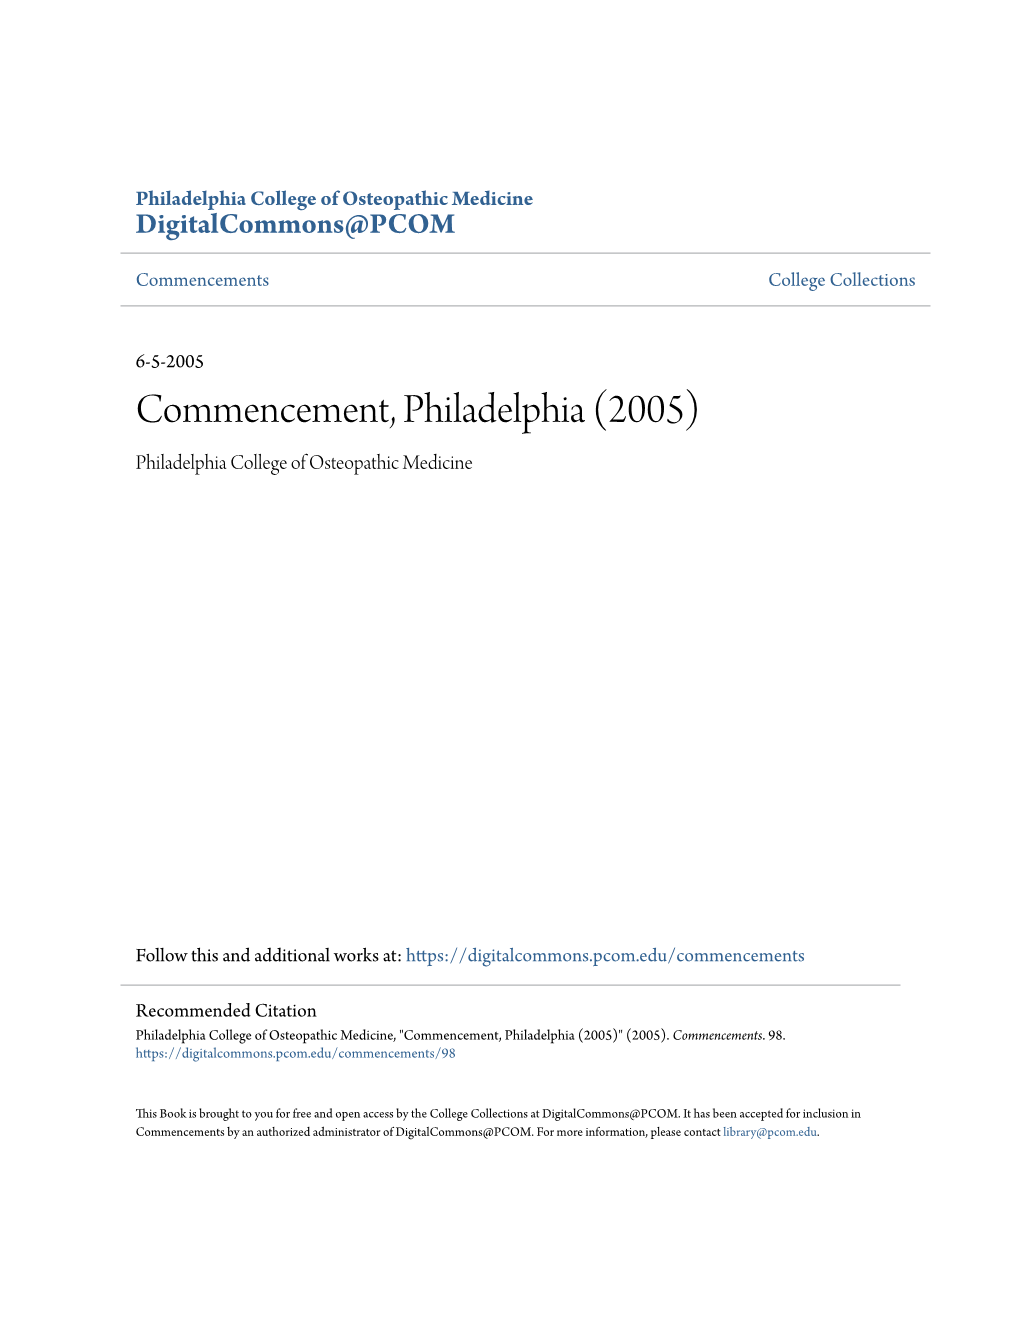 Commencement, Philadelphia (2005) Philadelphia College of Osteopathic Medicine